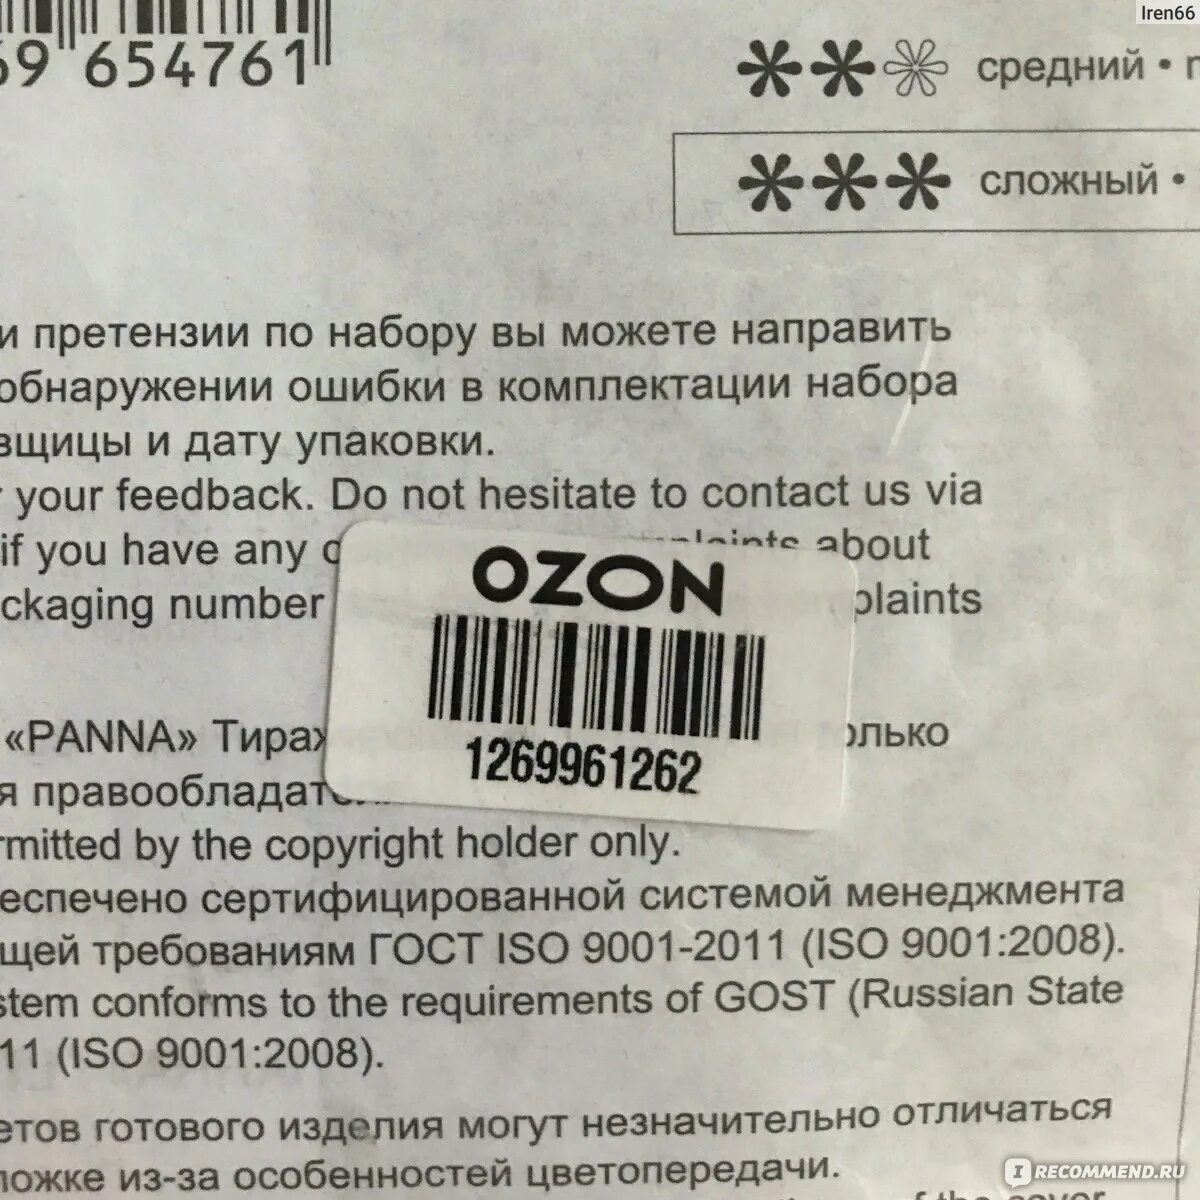 Пришел штрих код озон. Этикетка на товар для озона. Штрихкод Озон требования. OZON этикетка штрих код. Требования к этикетке Озон.